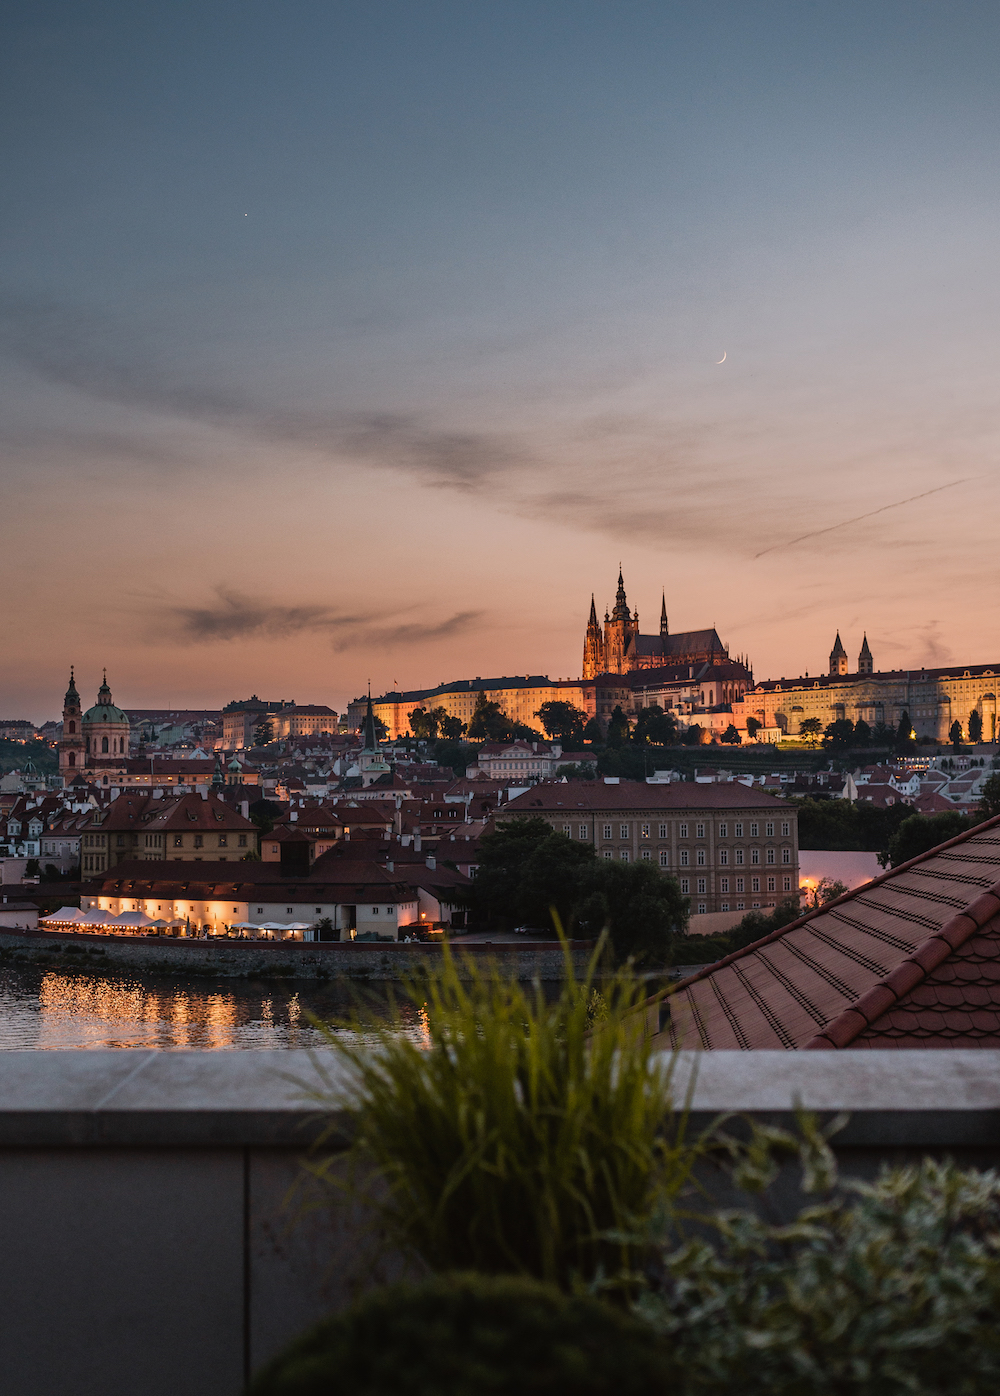 Quang cảnh Lâu đài Prague từ nhà hàng Miru tại khách sạn Four Seasons ở Prague. (Ảnh: Đăng dưới sự cho phép của khách sạn Four Seasons)